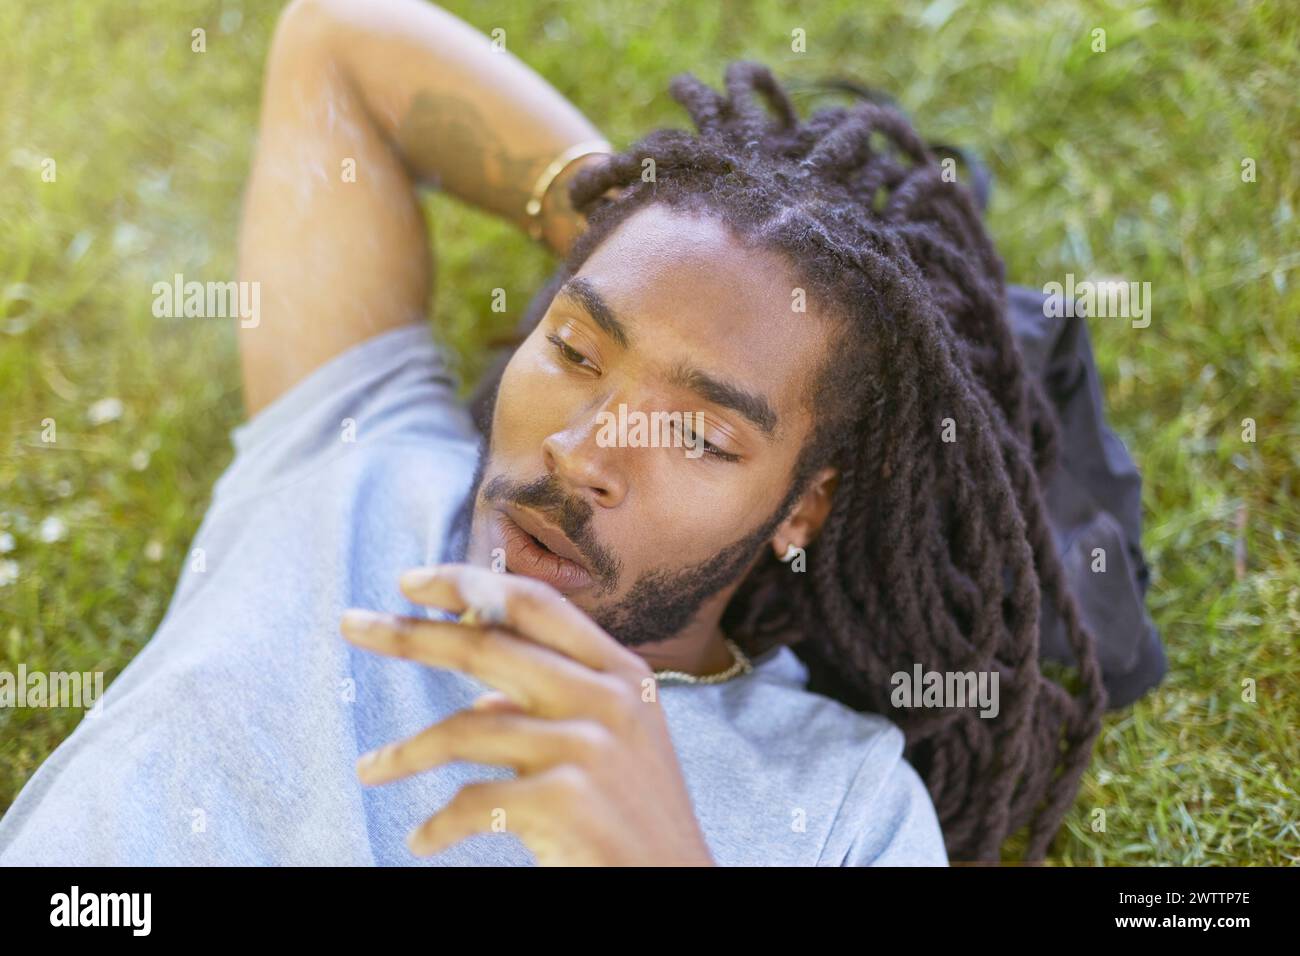 Ein Mann, der sich im Gras entspannt, mit einem nachdenklichen Ausdruck. Stockfoto